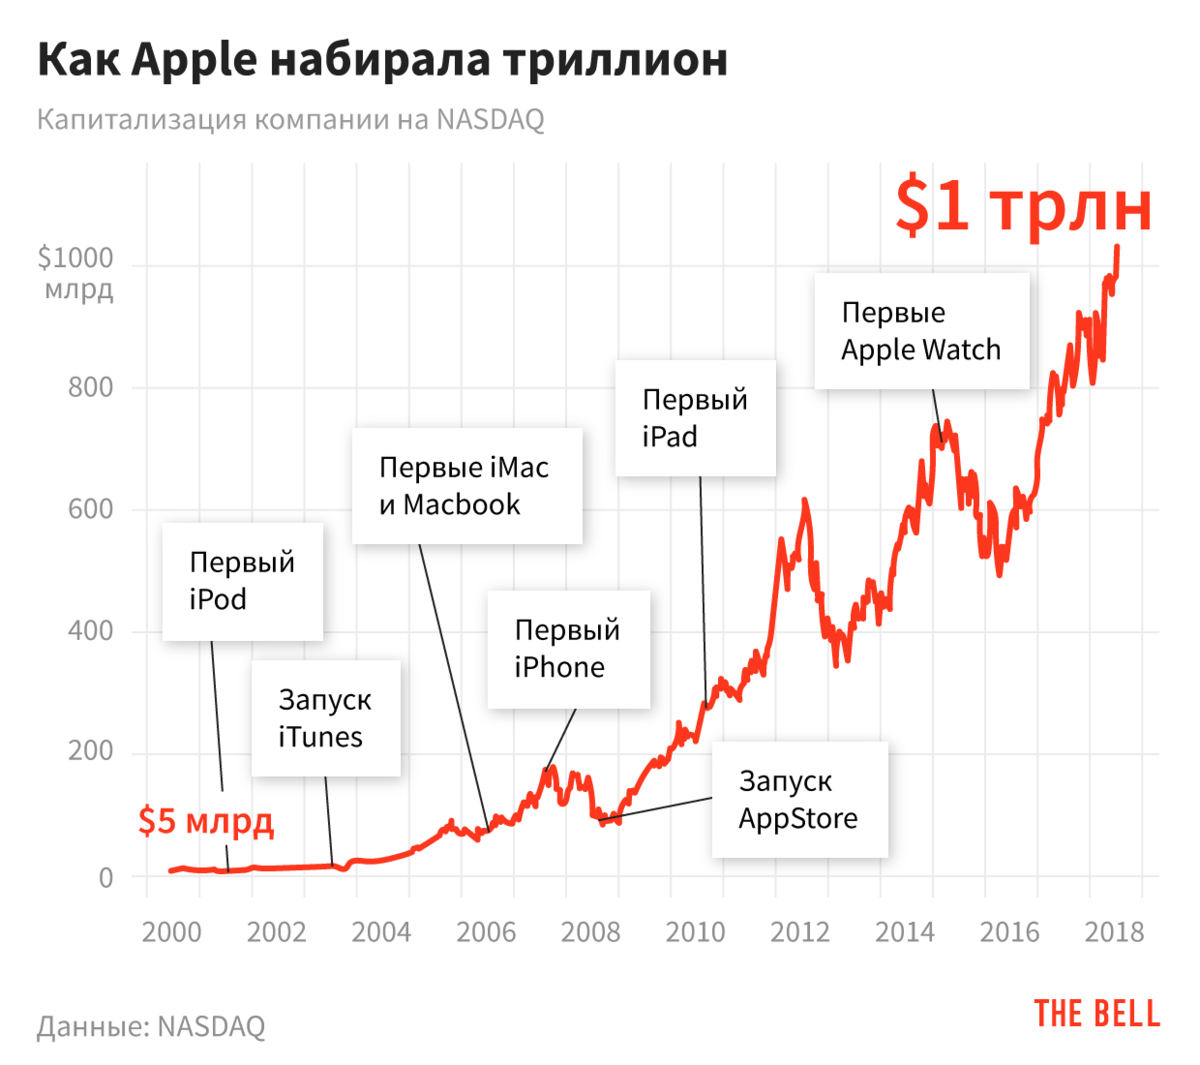 Рост капитализации Apple по годам. Капитализация Эппл по годам график. Рост акций Apple. Капитализация компании Apple. Изменение цены акции за год